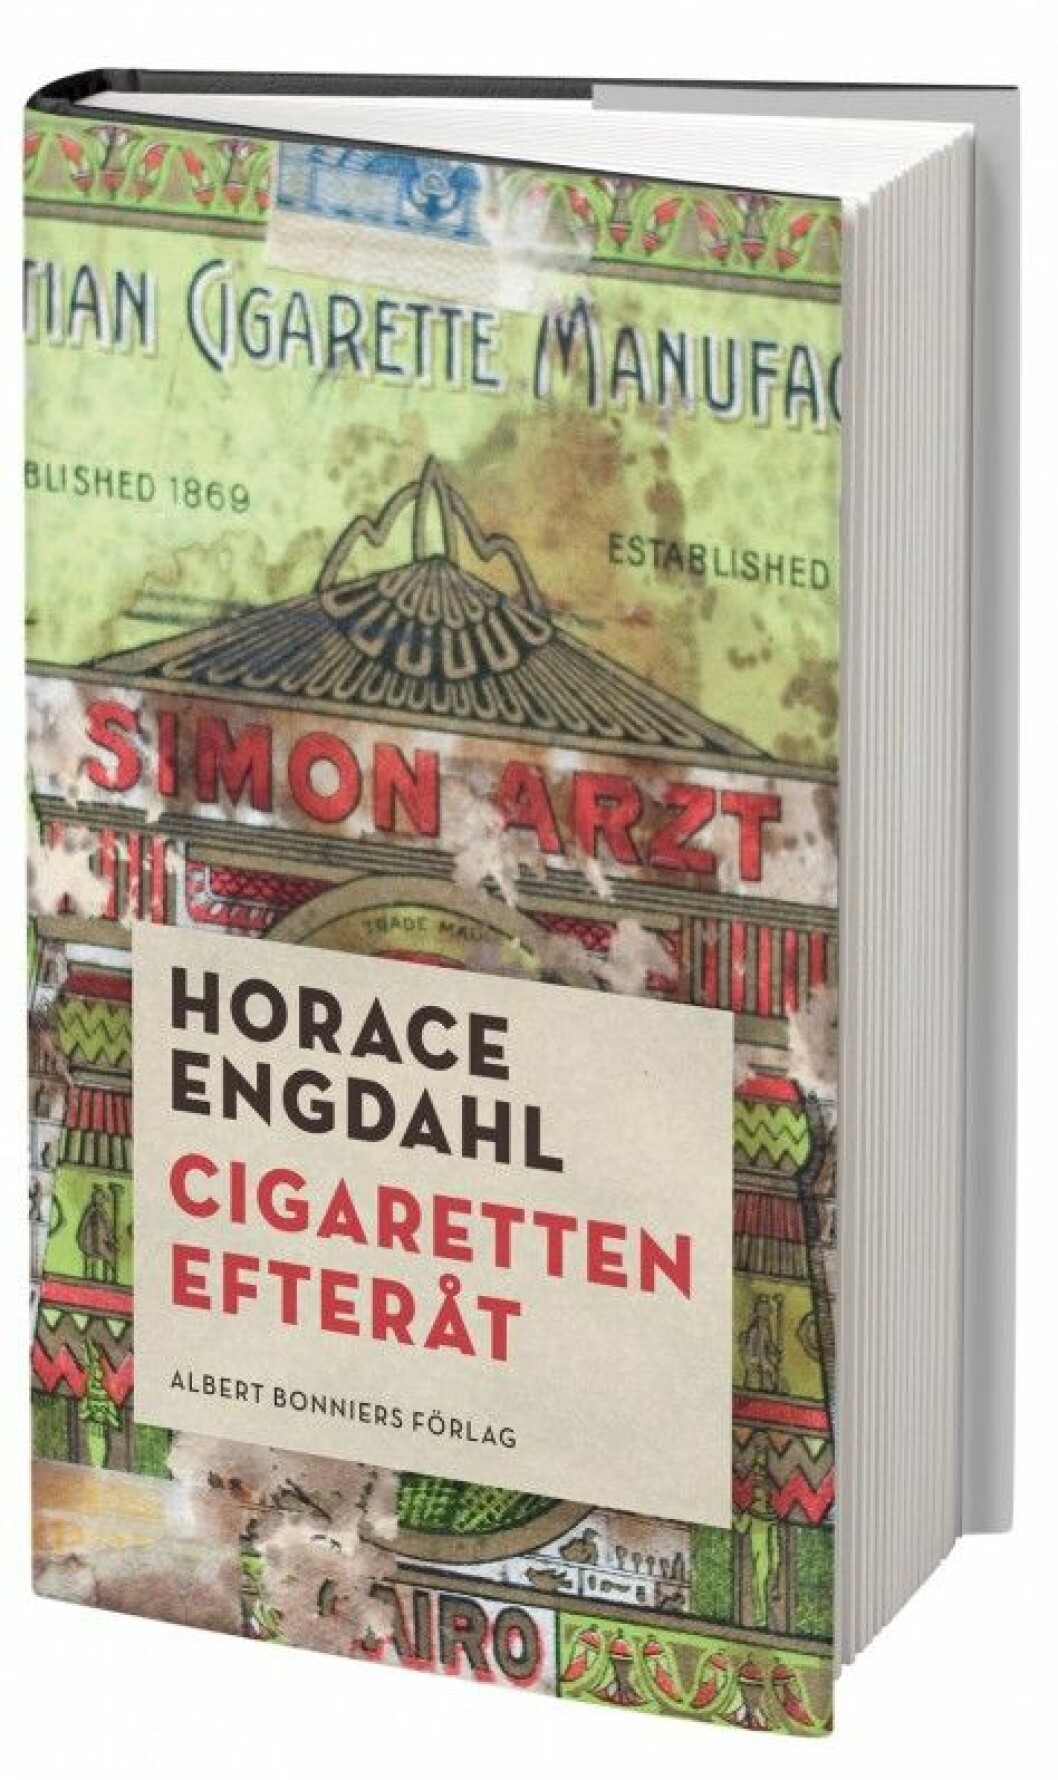 Horace Engdahl – Cigaretten efteråt (Albert Bonniers förlag)